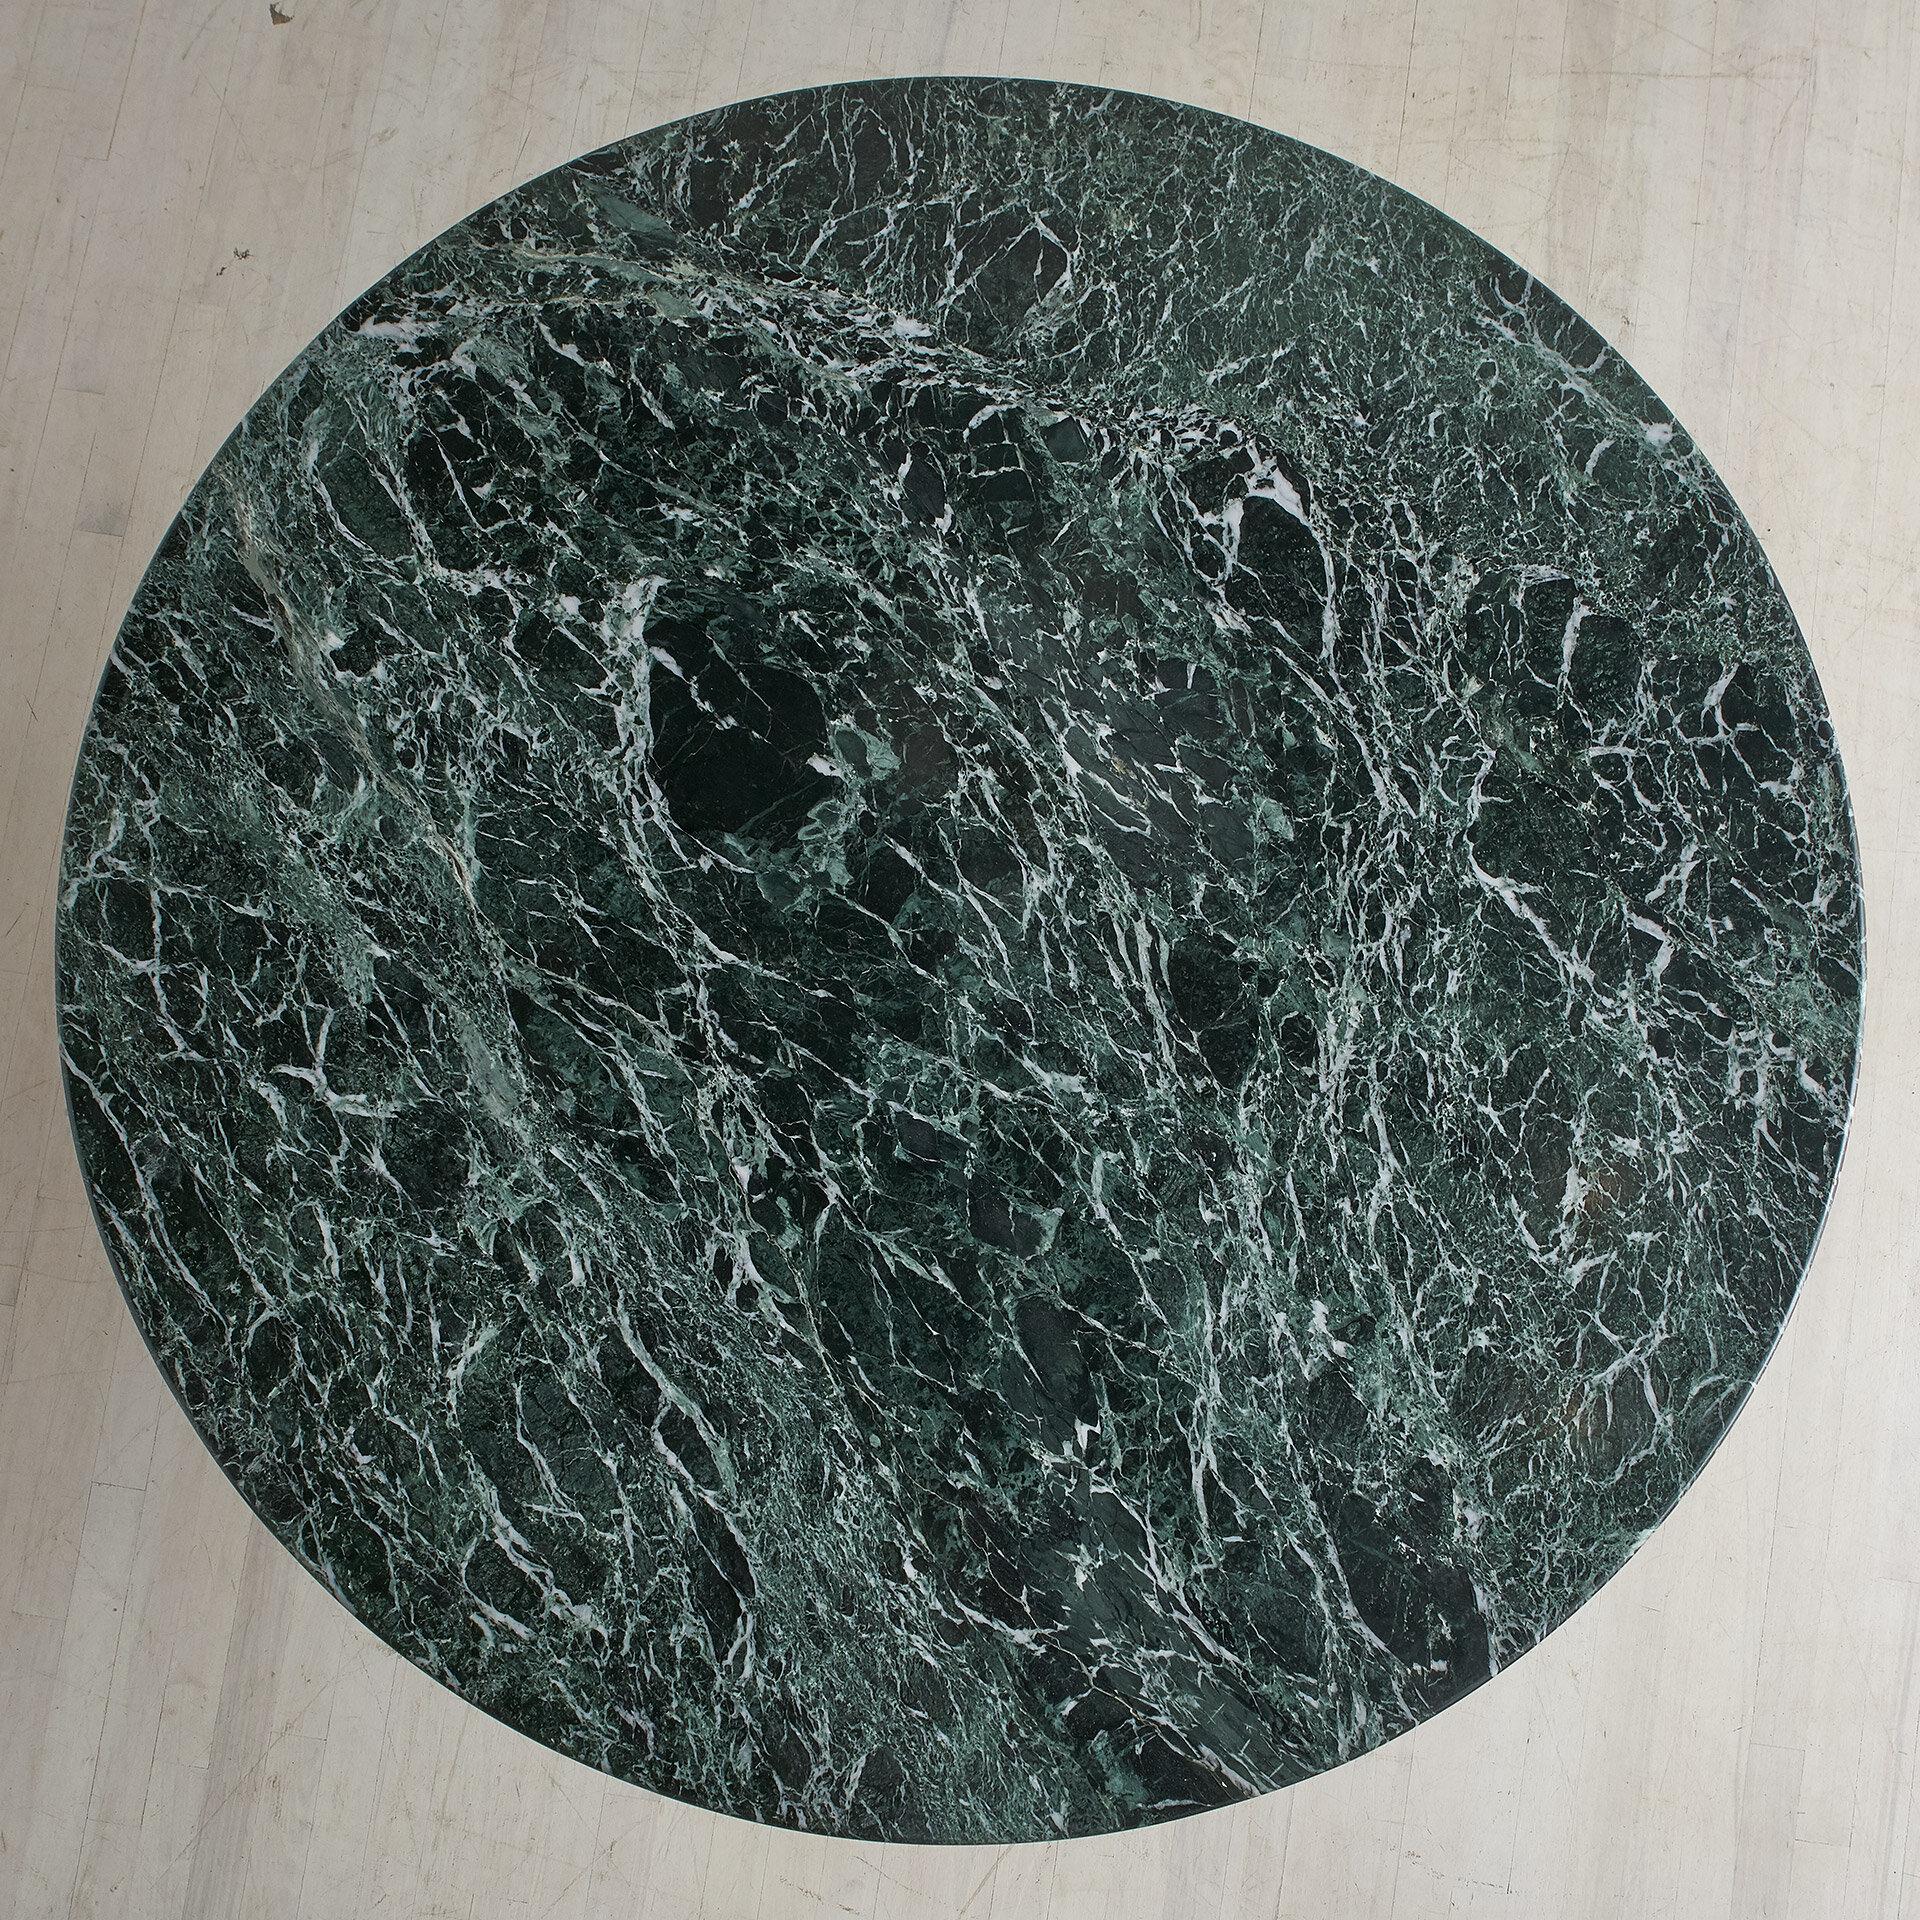 Une superbe table de salle à manger en marbre vert vintage, faite sur mesure. Cette table présente une base ronde de taille spectaculaire, composée de nombreux morceaux verticaux de marbre vert montés sur une base en bois. La table présente une